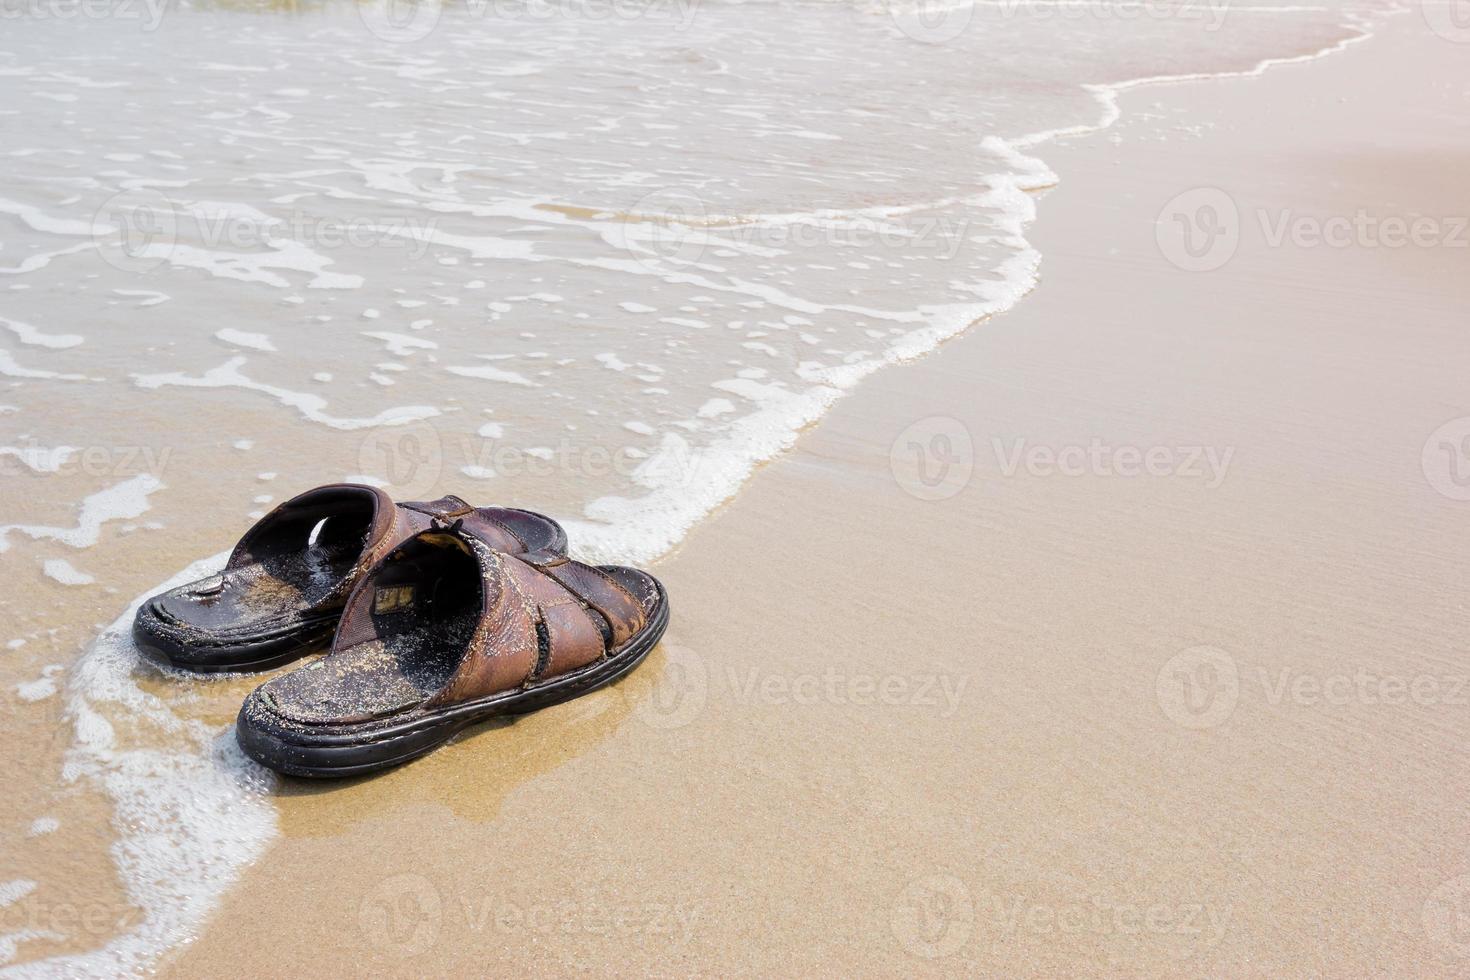 sandalias viejas en la playa 10786593 Foto stock en